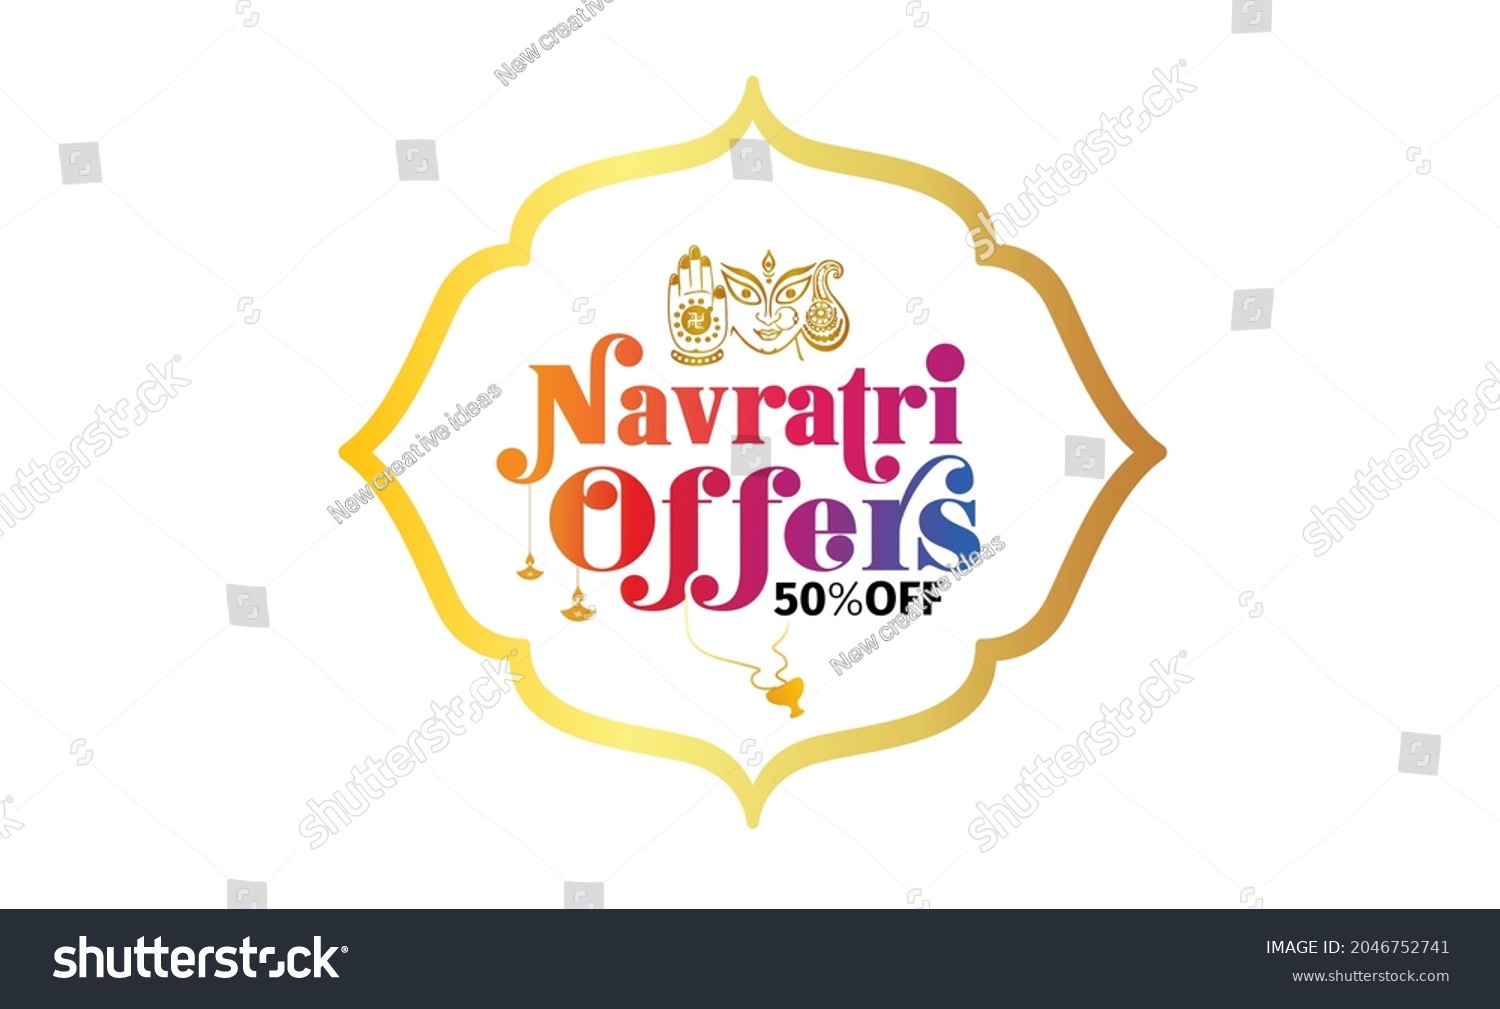 SVG of Durga Puja Navratri festival sale offers banner background svg